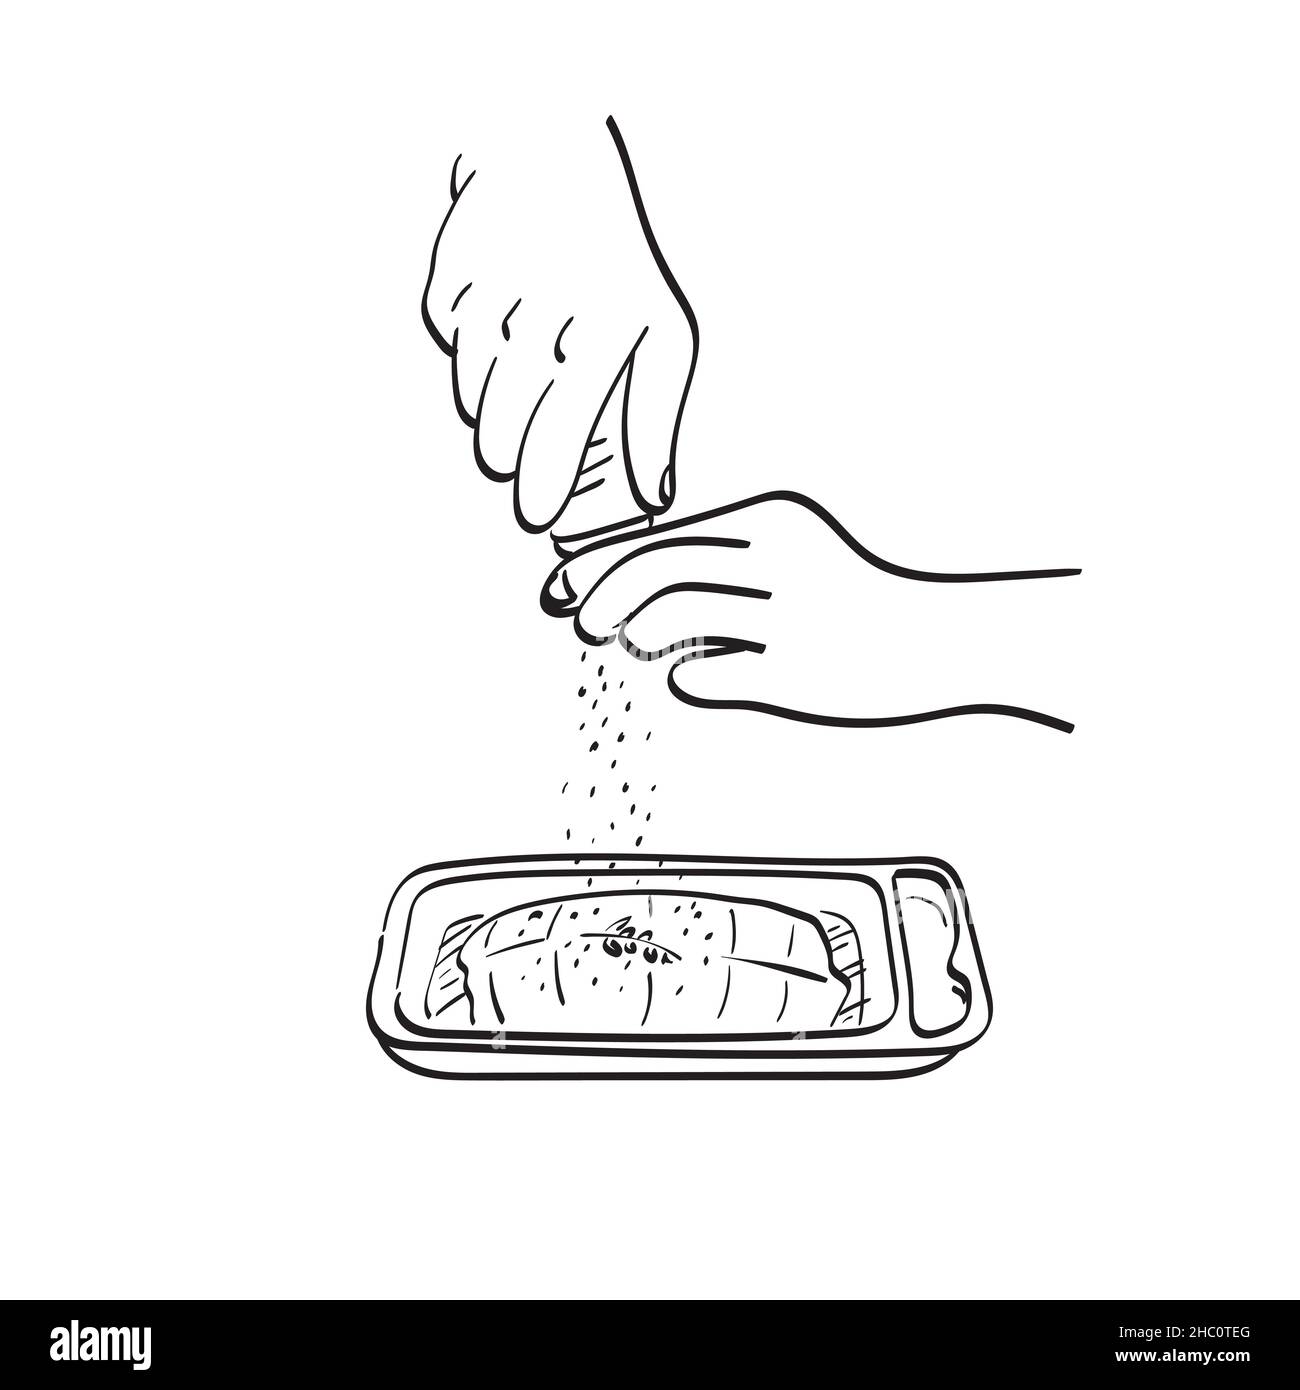 Nahaufnahme Hand hält Salzkeller auf calmon Steak Illustration Vektor Hand gezeichnet isoliert auf weißem Hintergrund Linie Kunst Stock Vektor